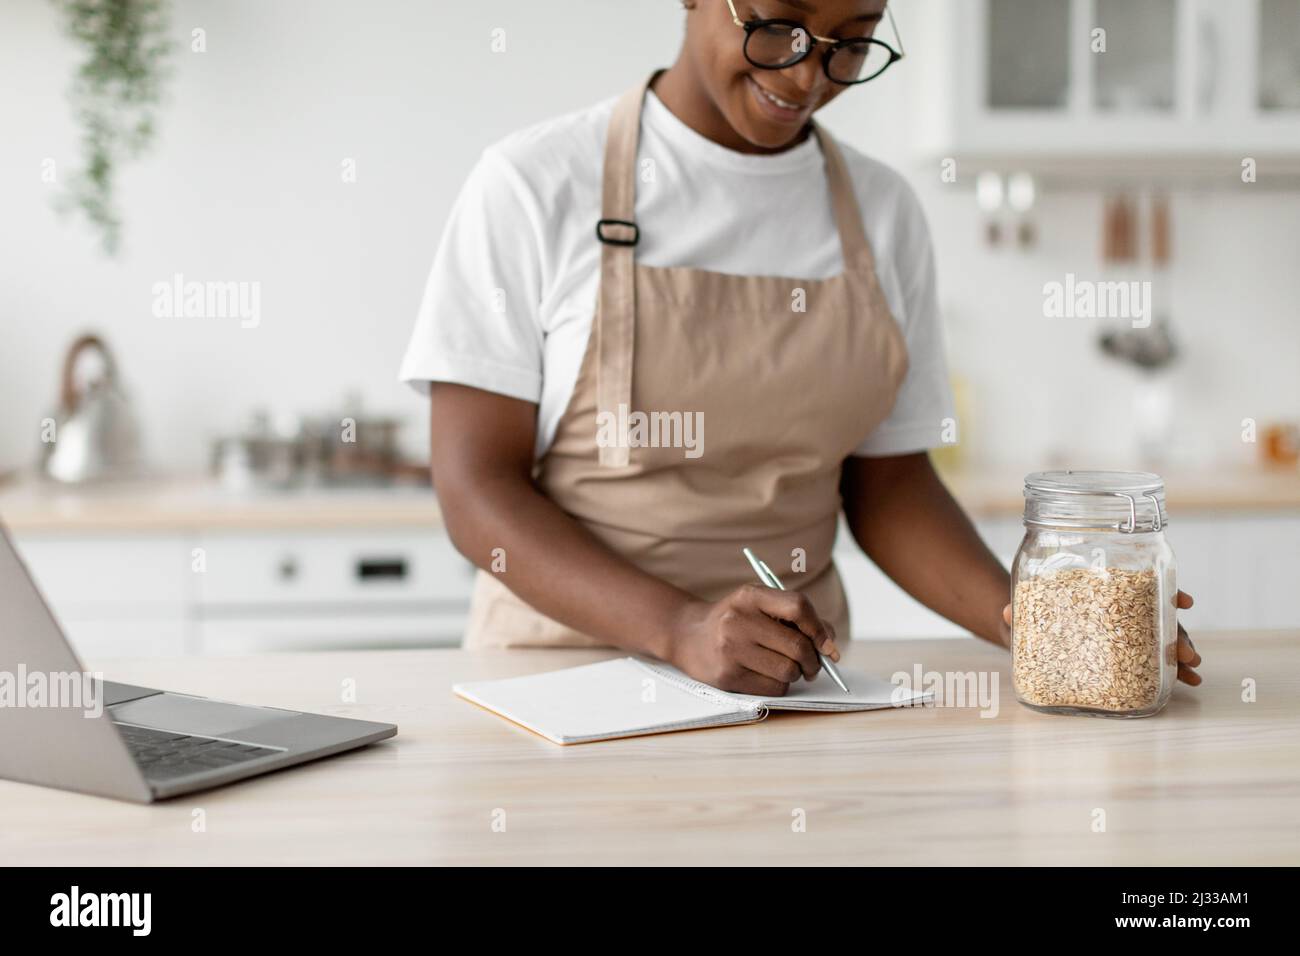 Une femme afro-américaine millénaire contente de lunettes et de tablier écrit une nouvelle recette avec un ordinateur portable dans la cuisine scandinave moderne Banque D'Images